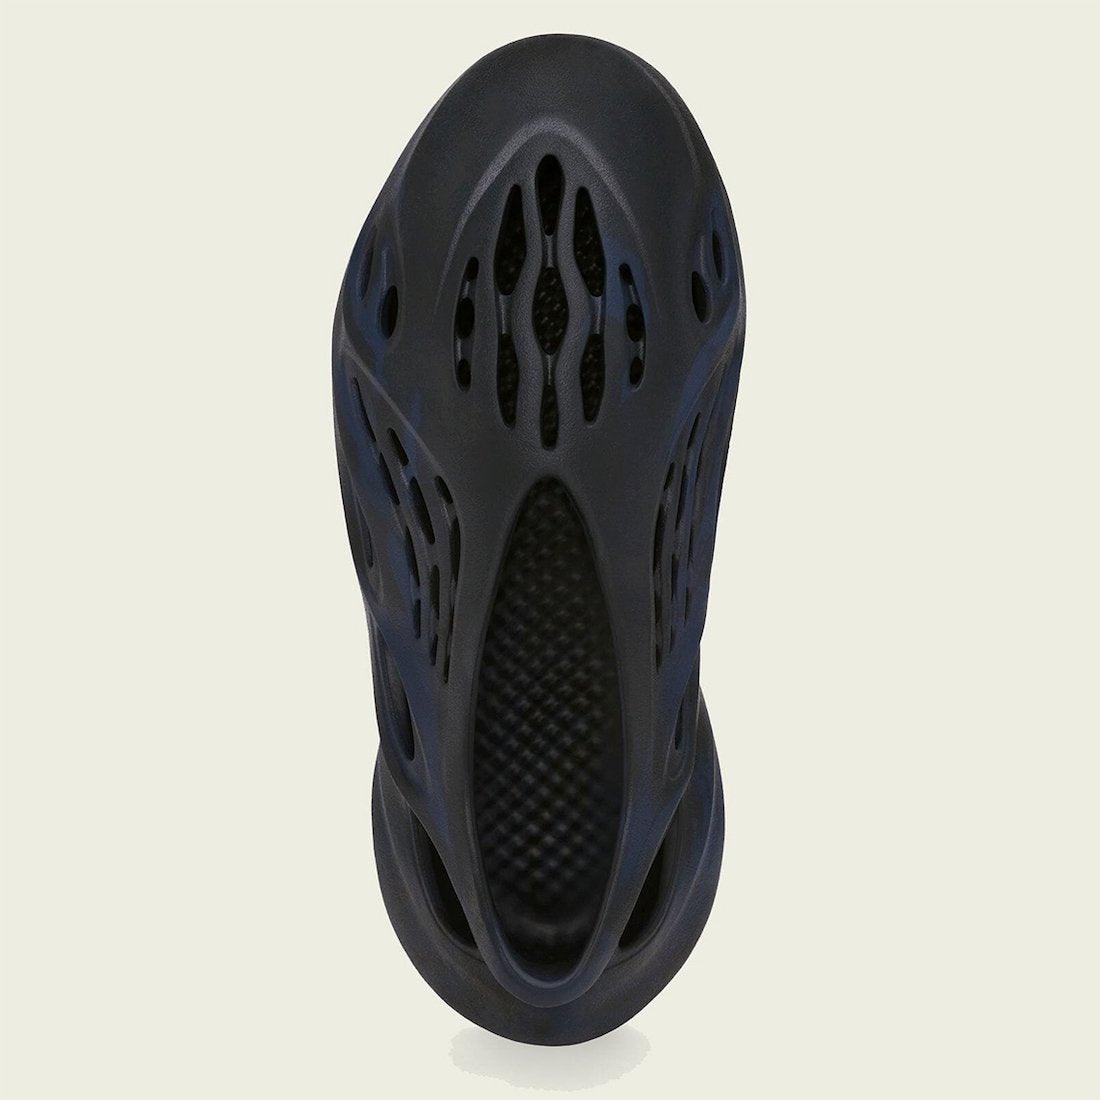 Adidas Yeezy Foam Runner “Mineral Blue” Men's Shoes - CADEAUME